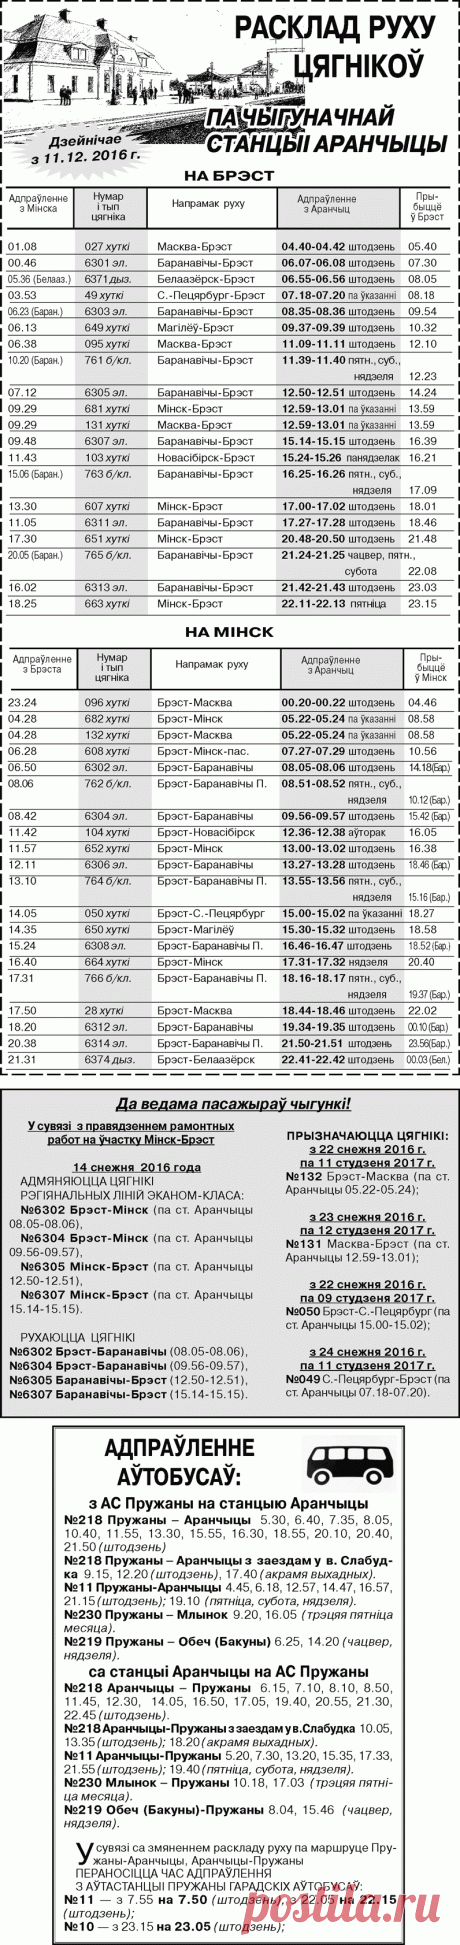 Расписание движения поездов по железнодорожной станции Оранчицы + расписание движения автобусов по маршруту Пружаны-Оранчицы